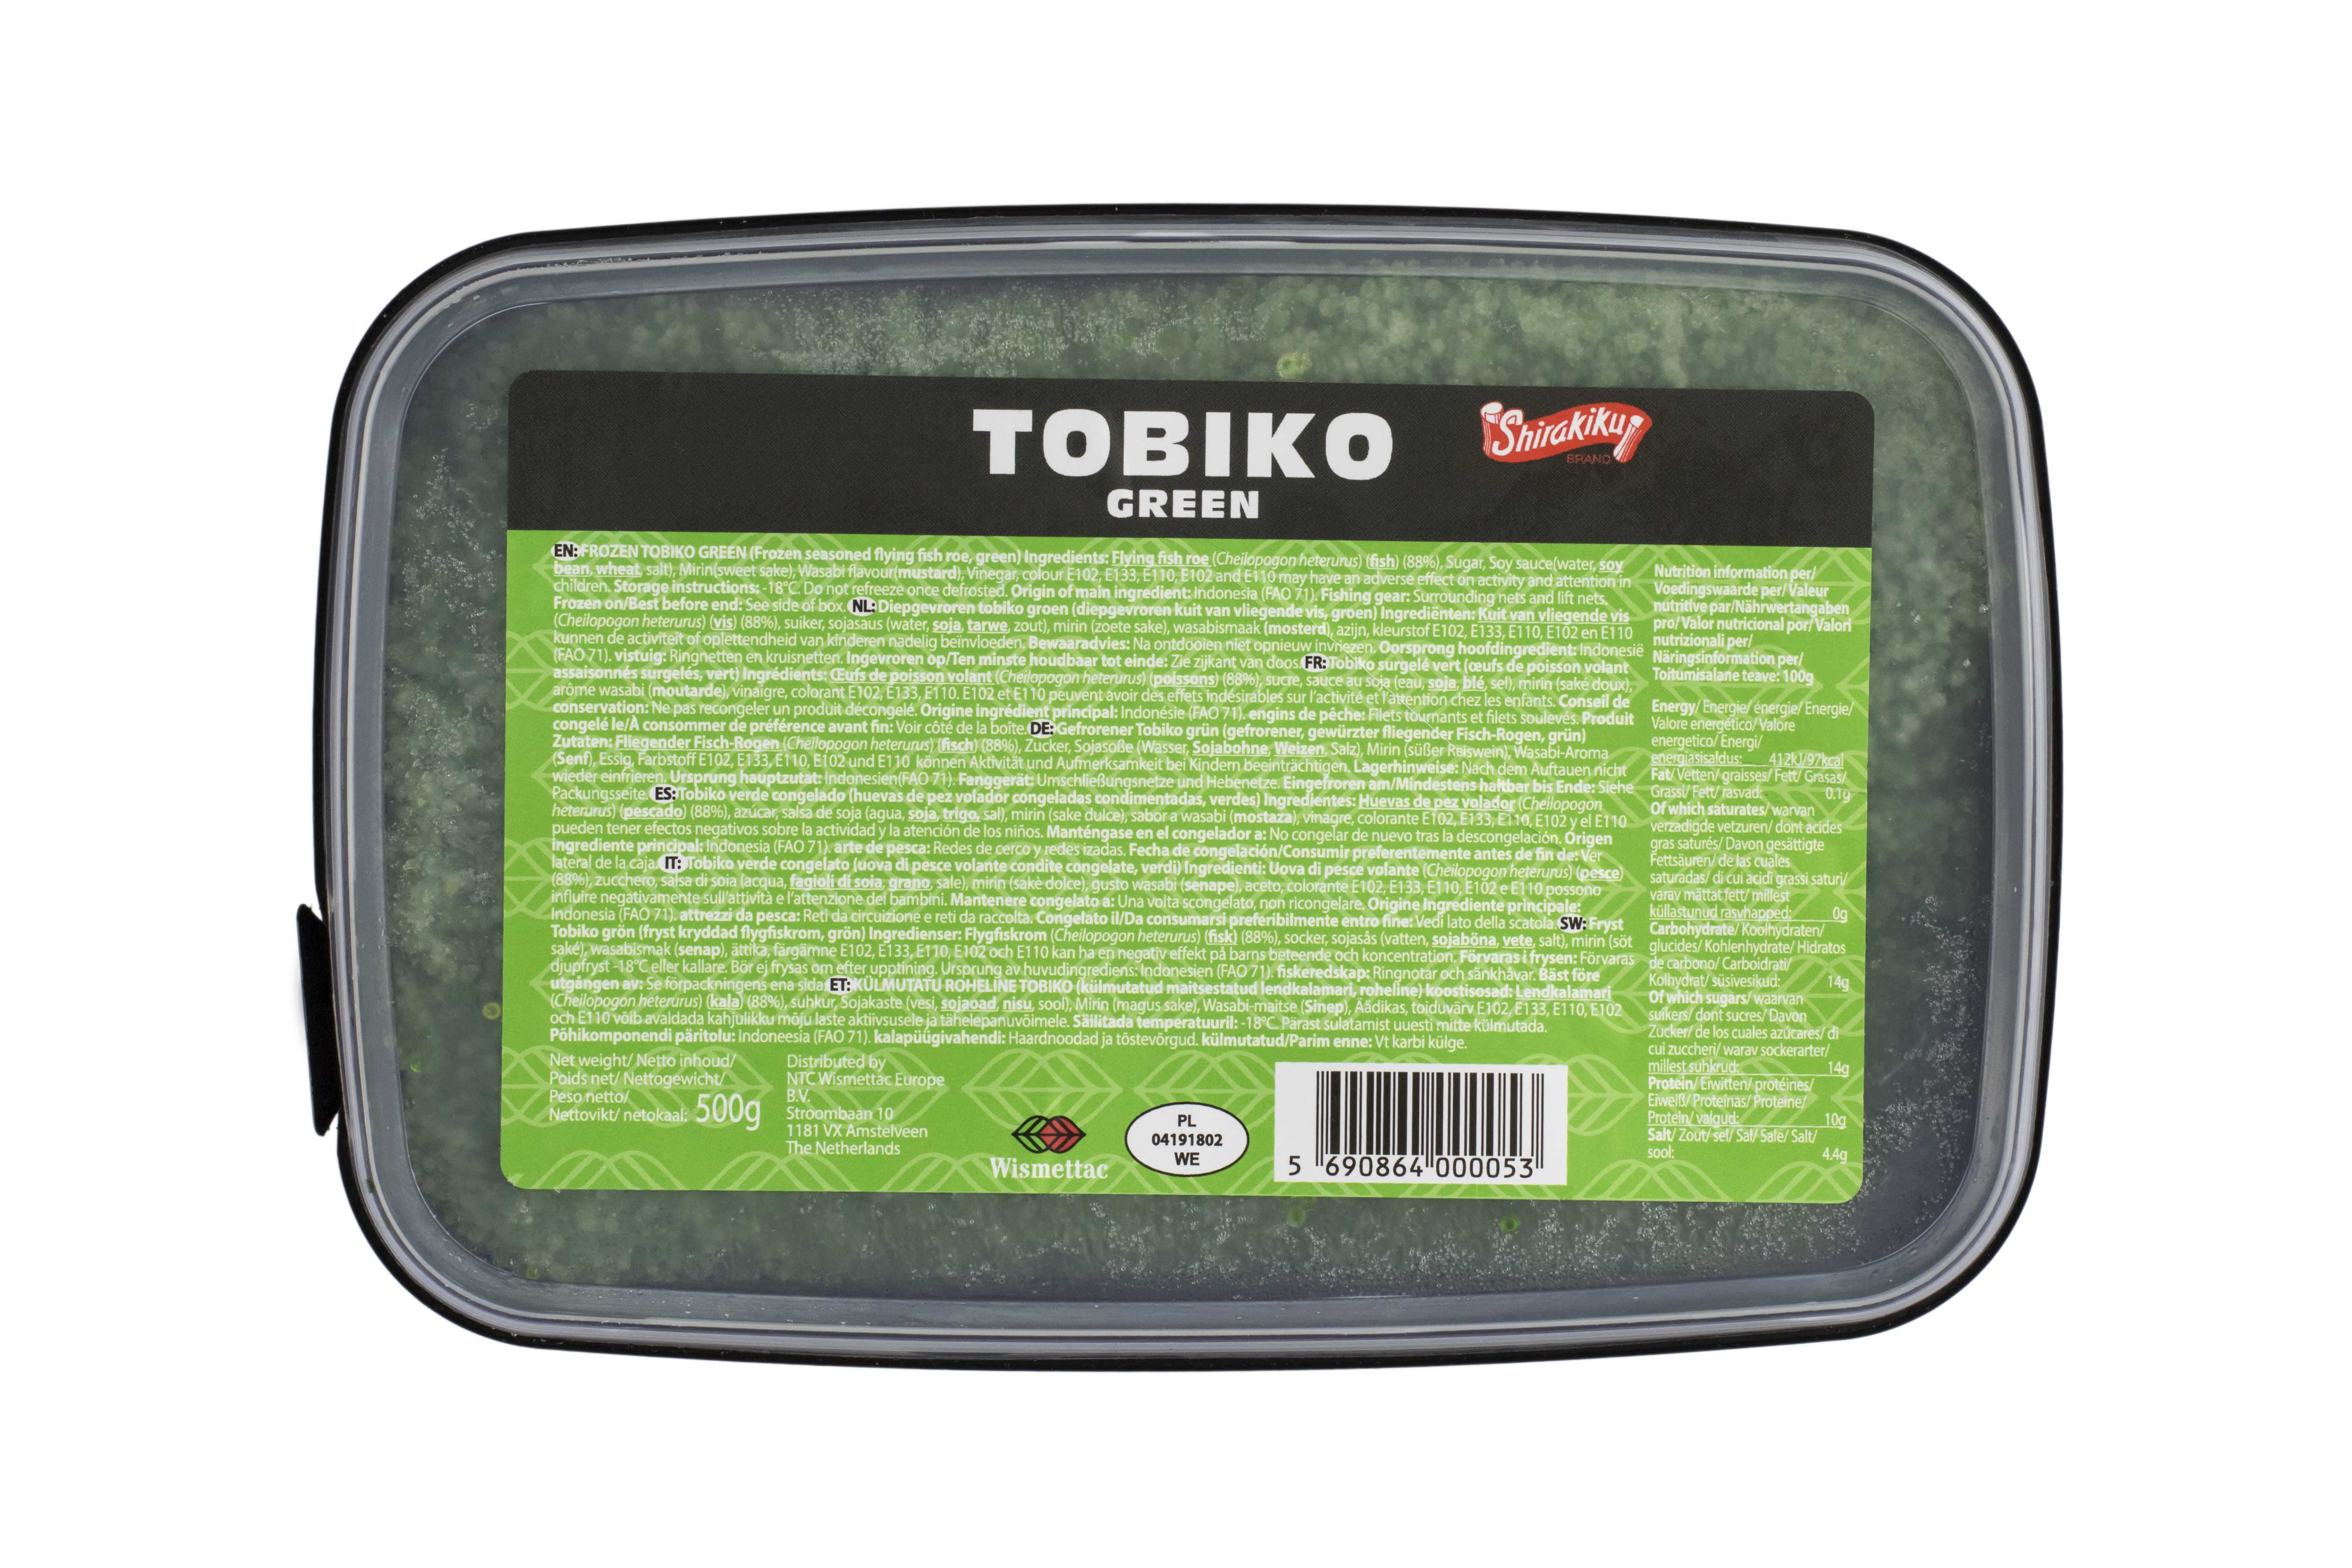 Icre Tobiko verzi (wasabi), caserola de 500 gr Shirakiku